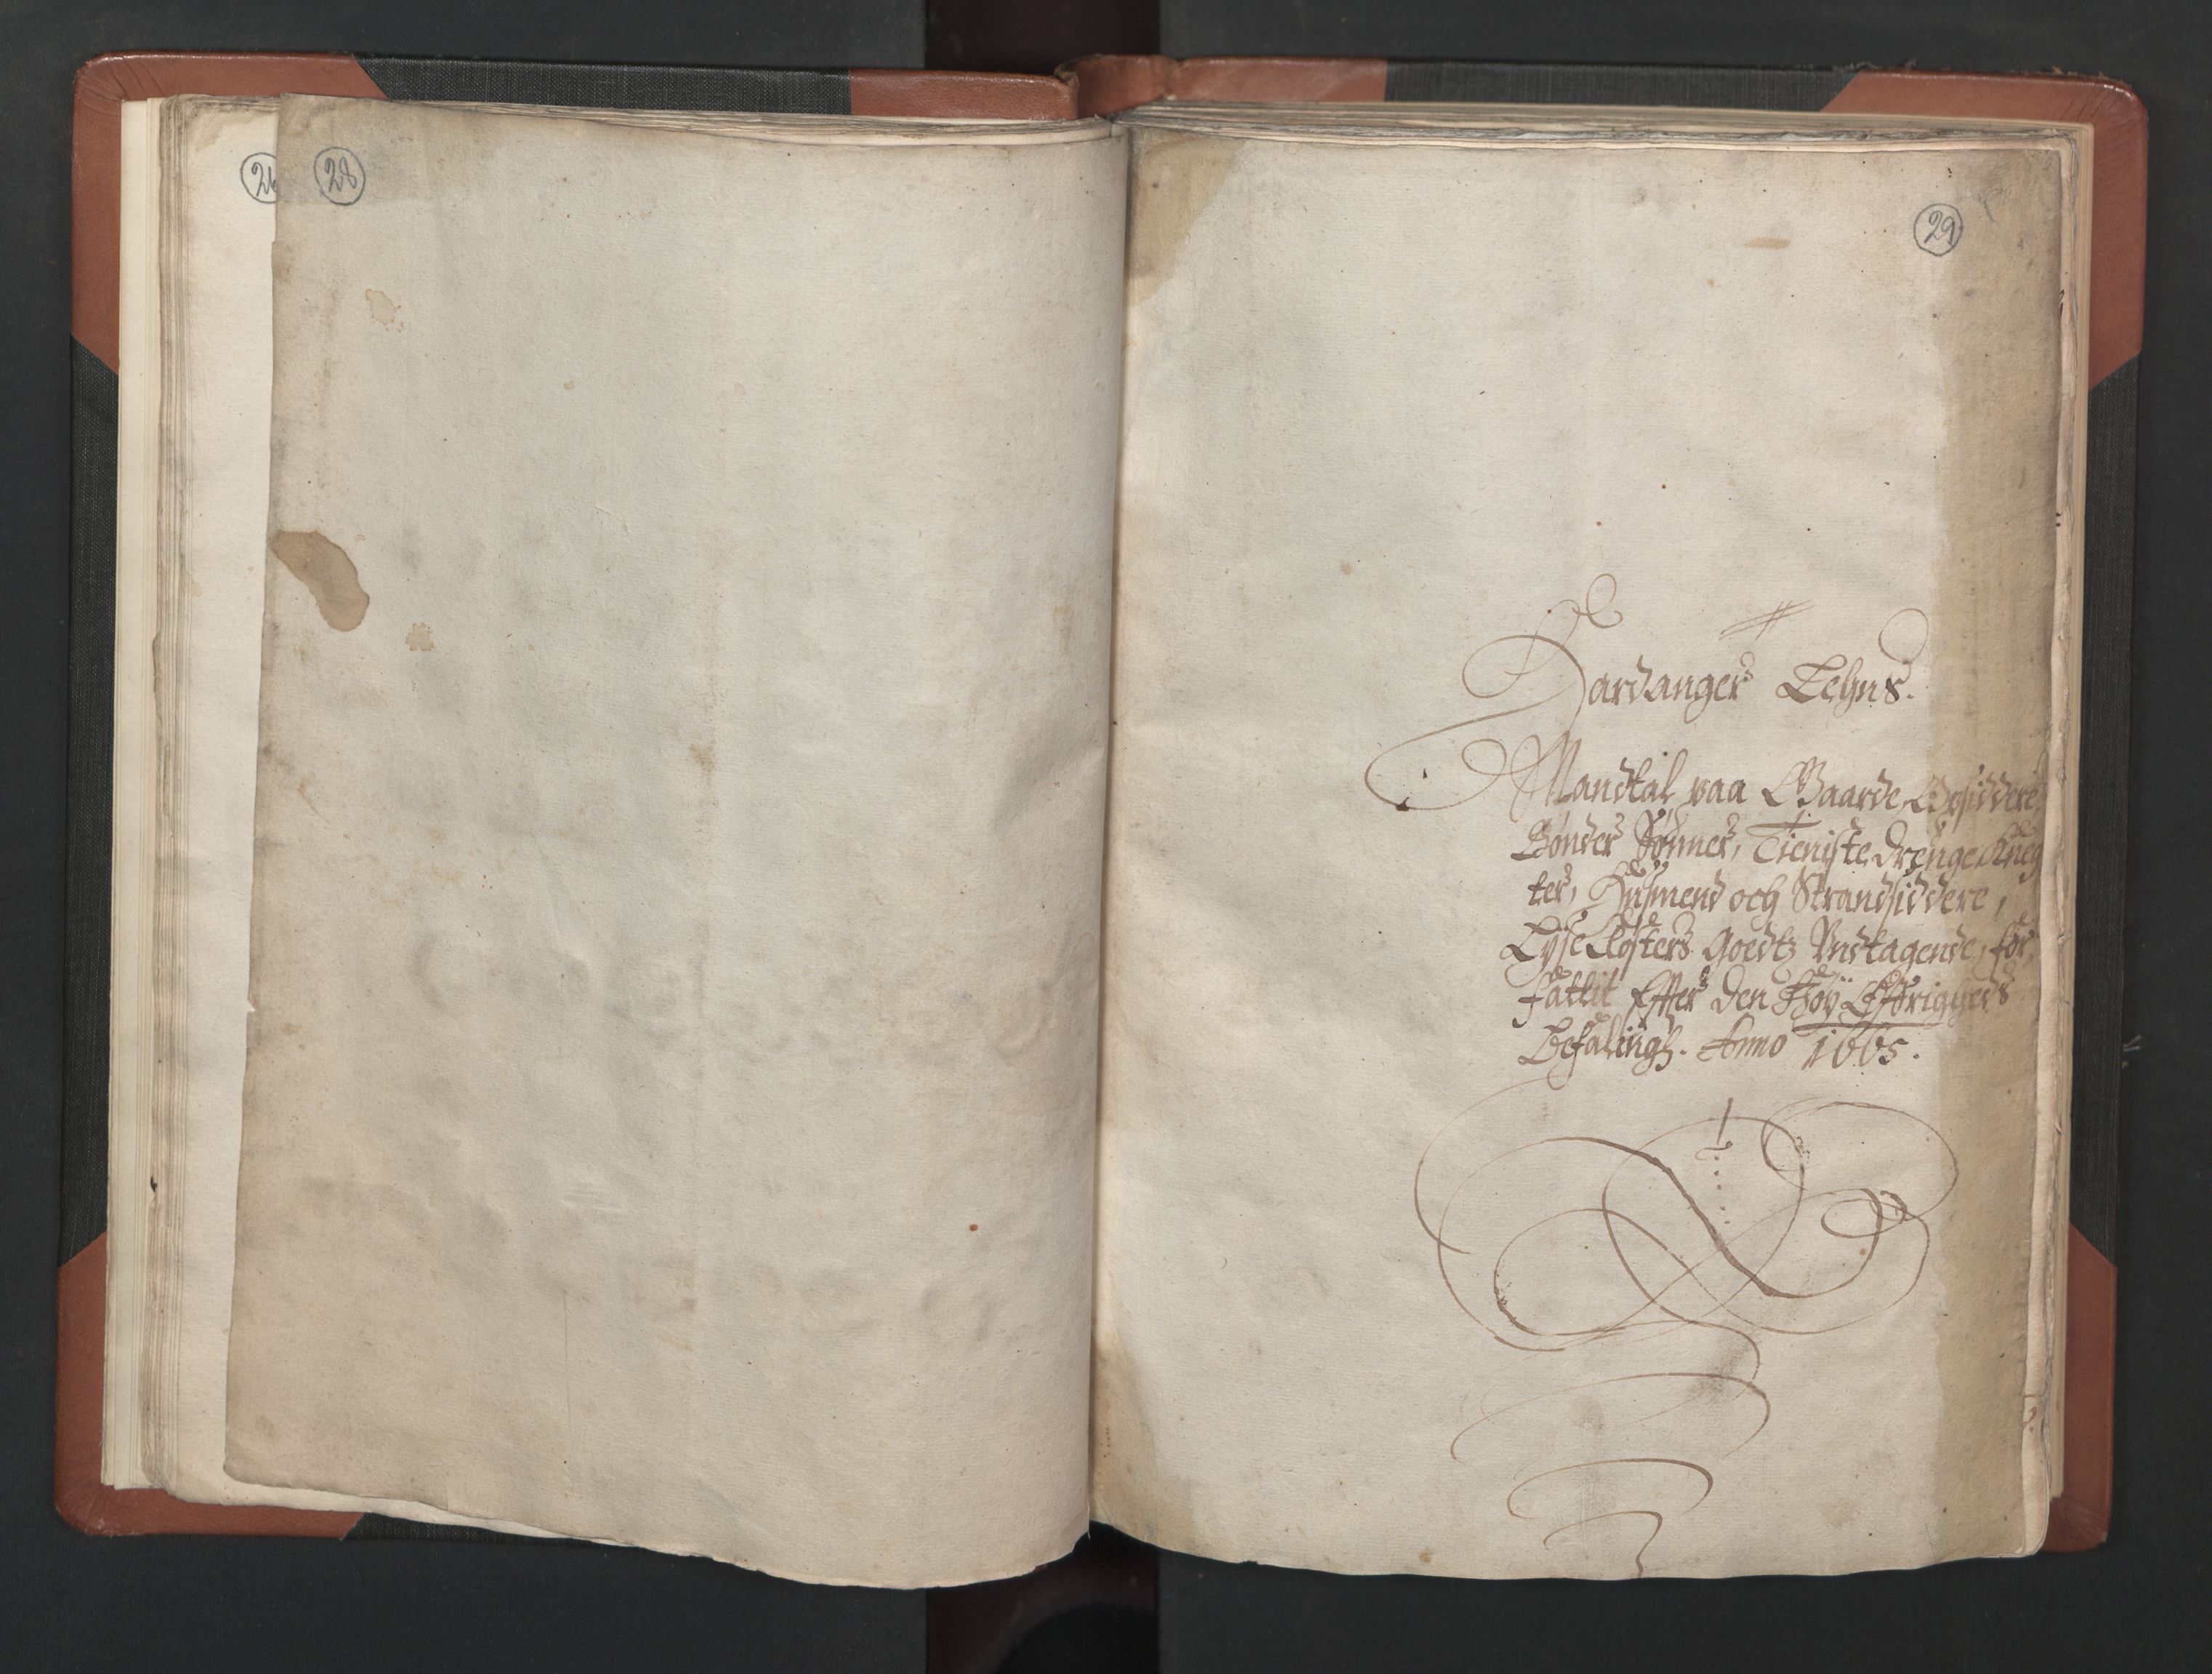 RA, Bailiff's Census 1664-1666, no. 14: Hardanger len, Ytre Sogn fogderi and Indre Sogn fogderi, 1664-1665, p. 28-29